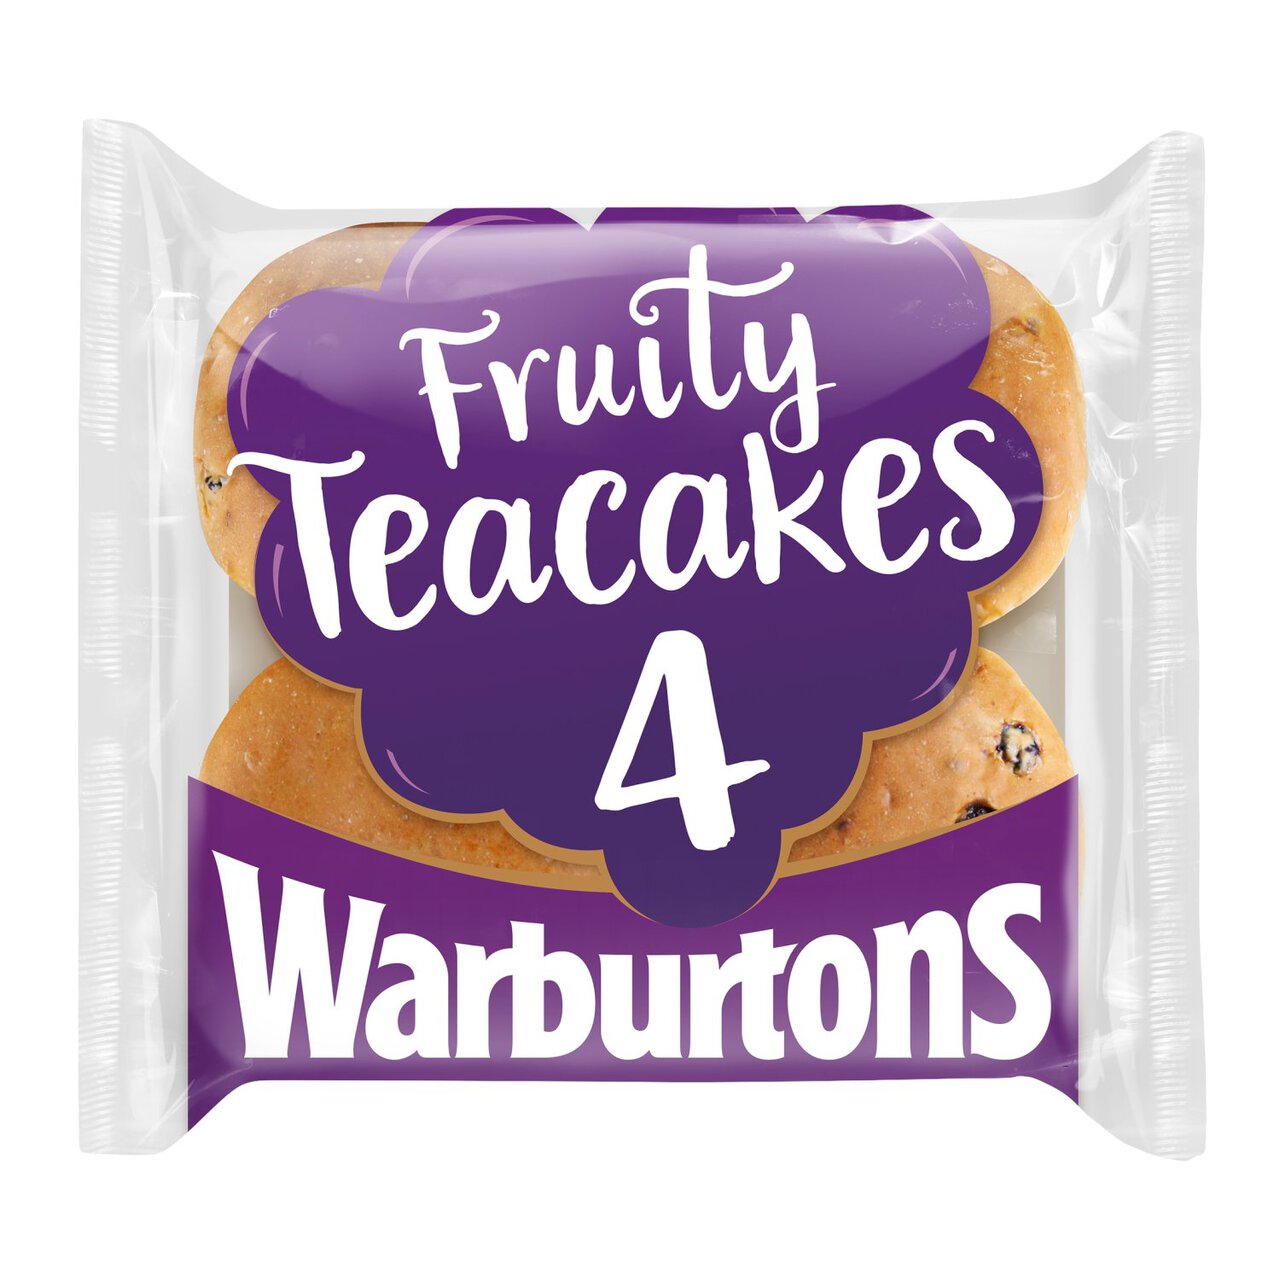 Warburtons Fruity Teacakes 4 per pack